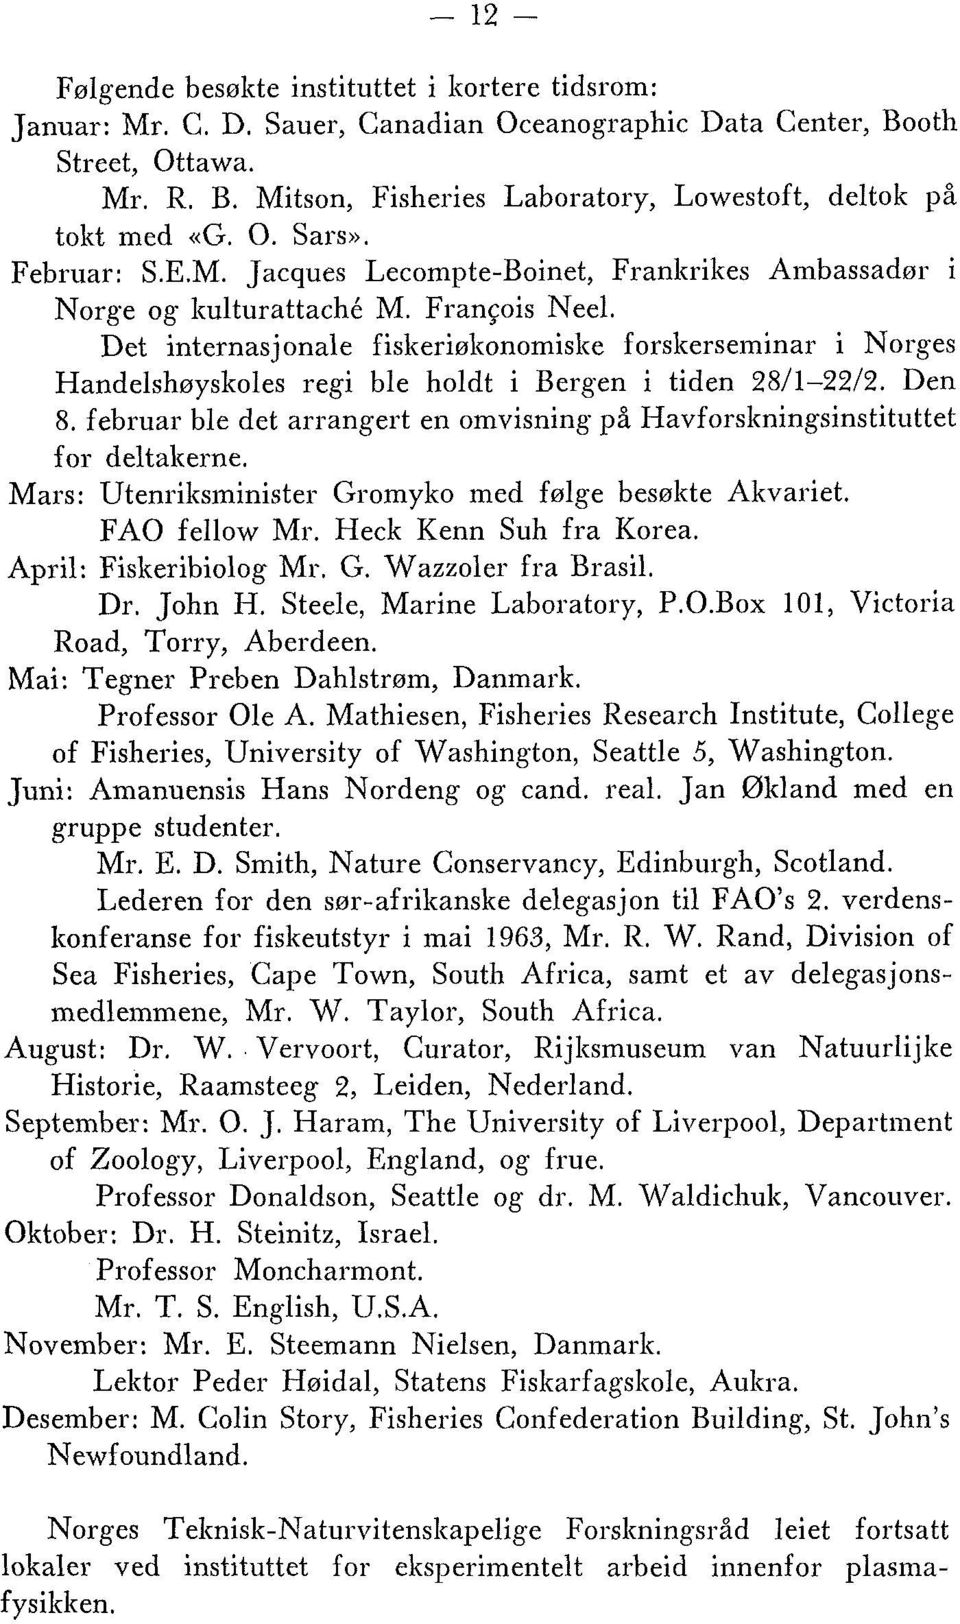 Det internasjonale fiskeriøltonomislte forslterseminar i Norges Handelshøyskoles regi ble holdt i Bergen i tiden 28/1-2212. Den 8.